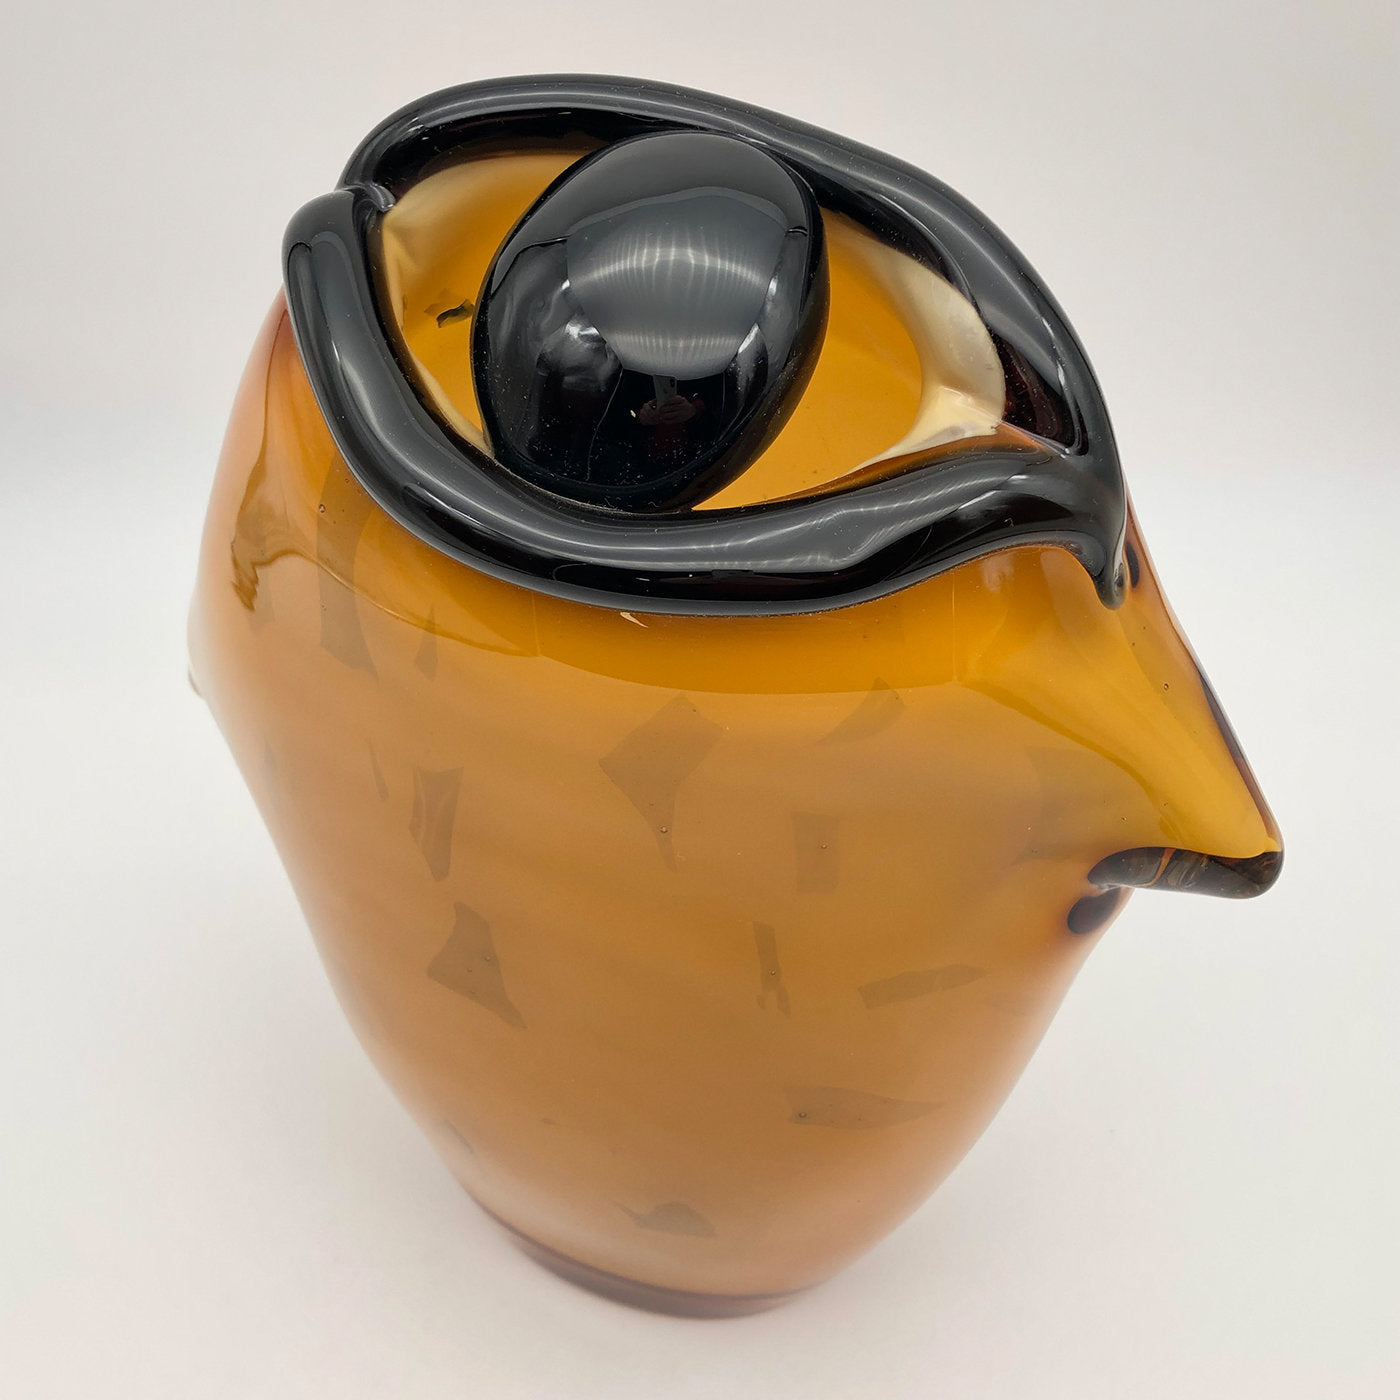 Vase d'ambre "The Eye" de Toso Cristiano - Vue alternative 2